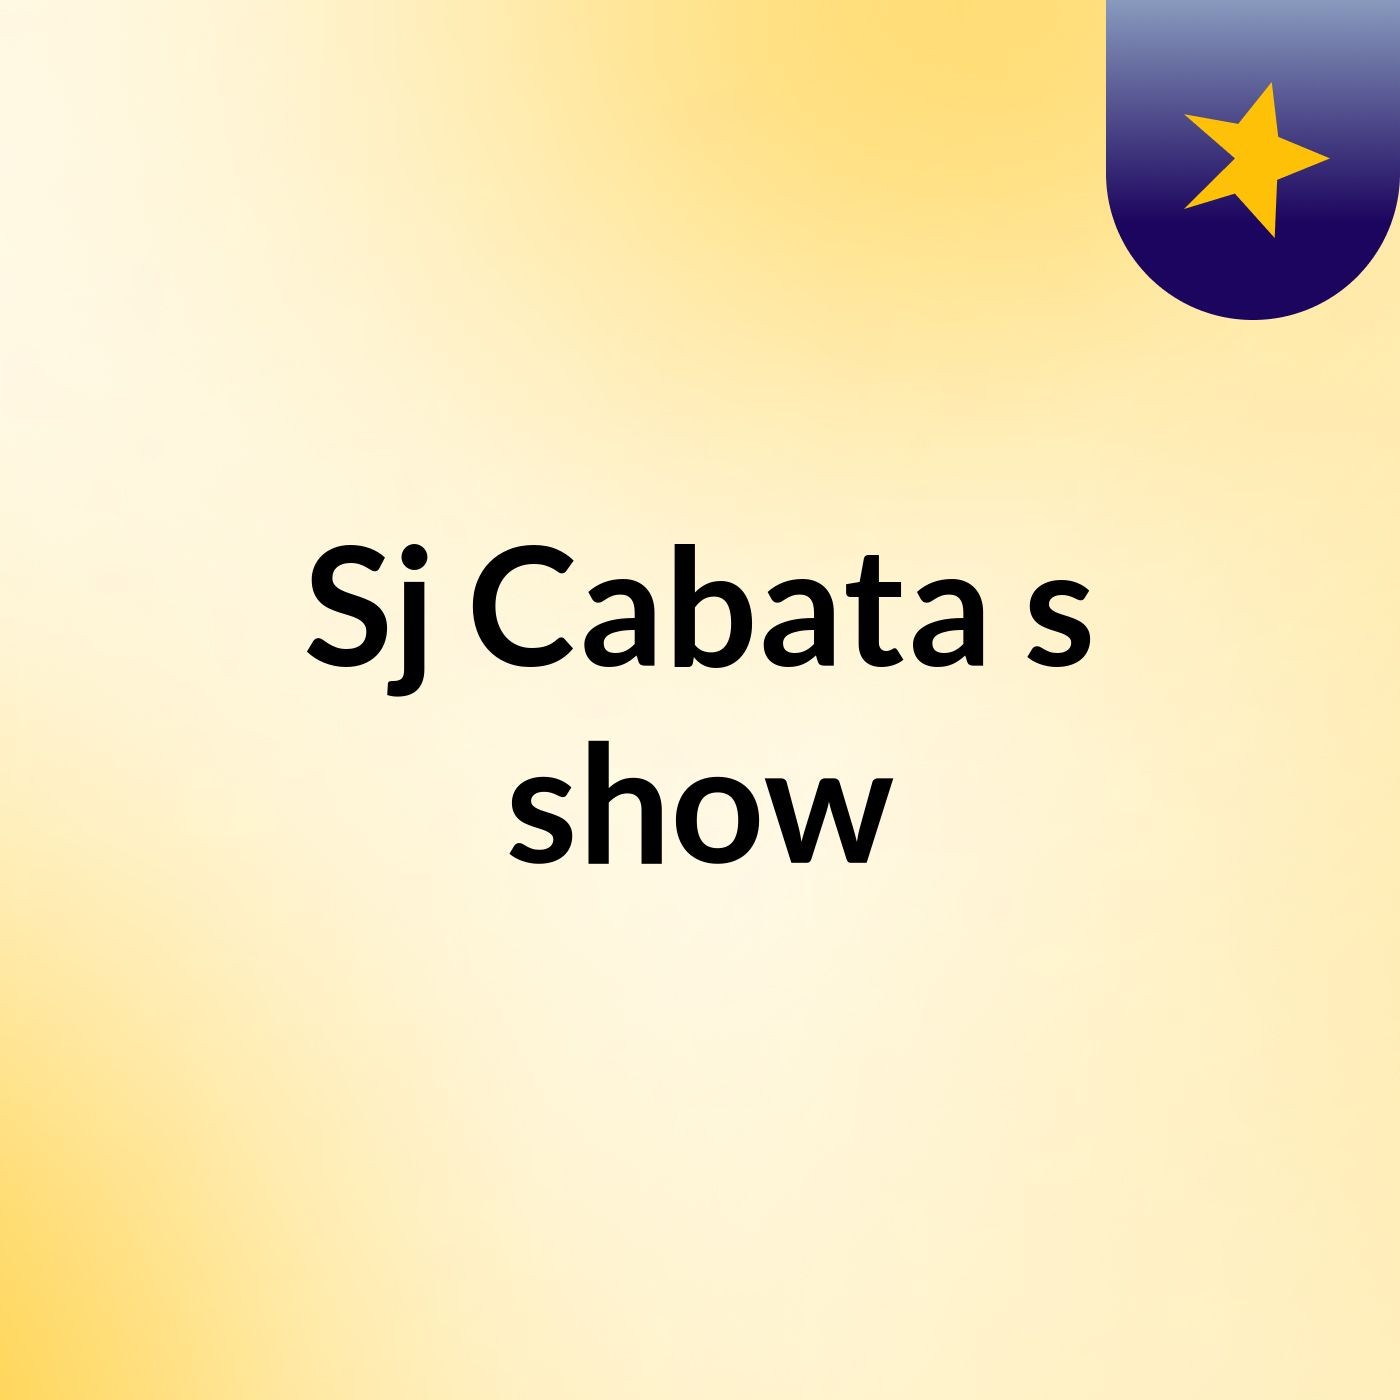 Sj Cabata's show